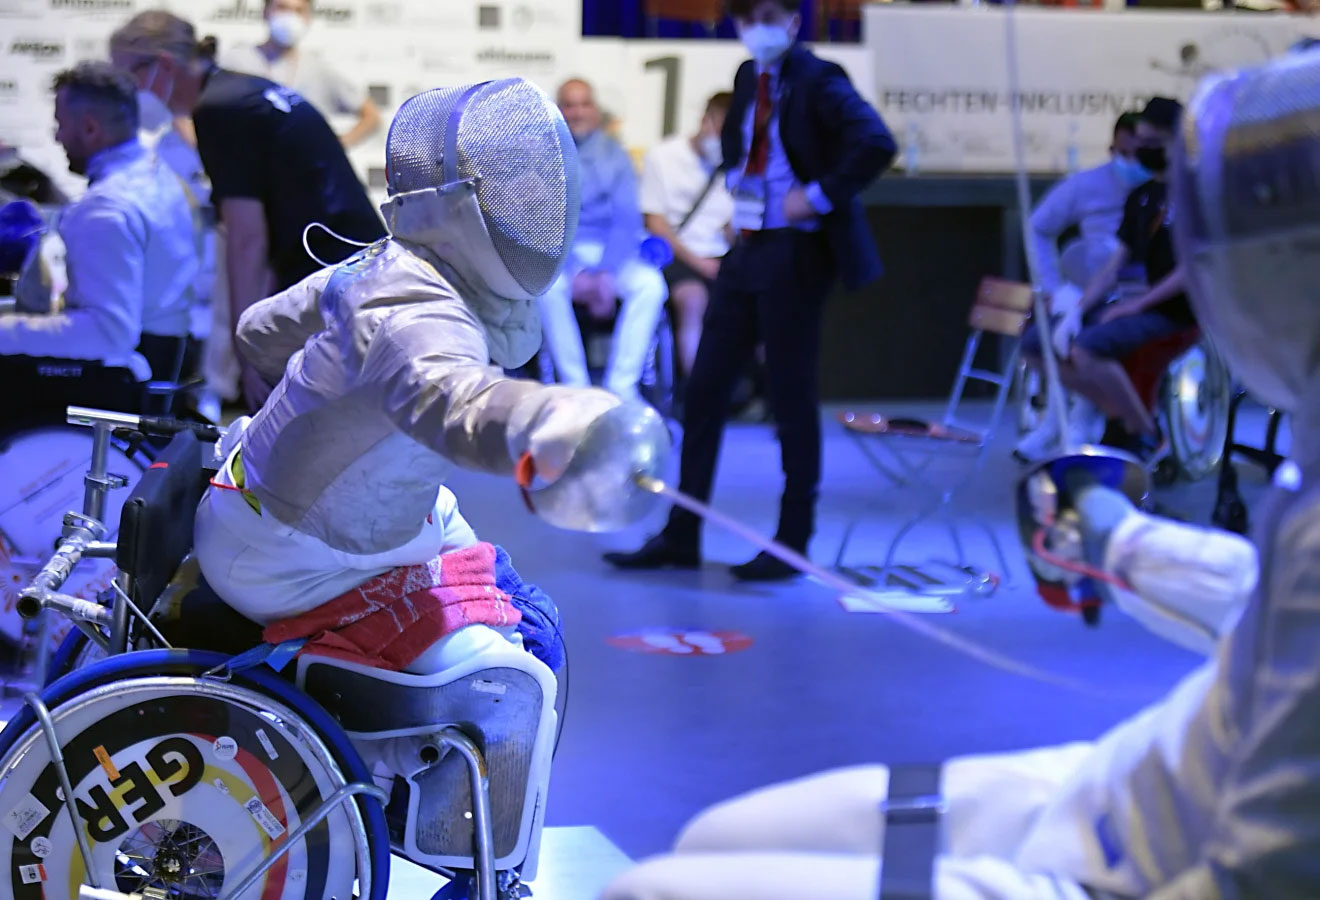 Foto: Claus Schunk  Der dominierende Rollstuhlfechter nicht nur bei dieser DM: Paralympics-Teilnehmer Maurice Schmidt aus Böblingen.